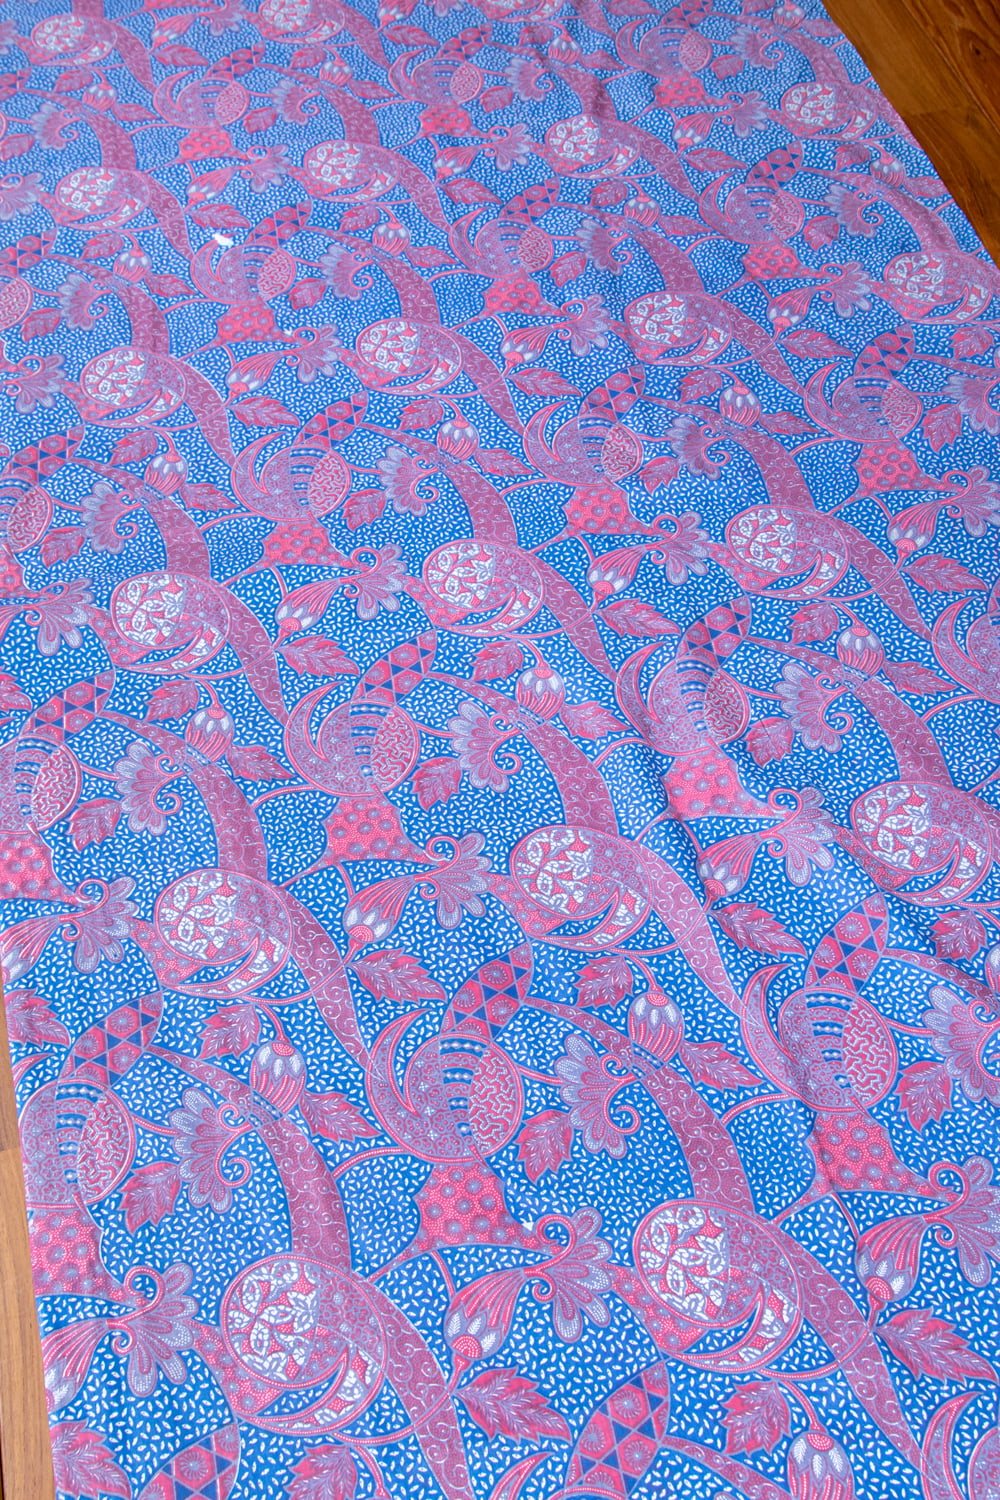 インドネシア伝統模様 ろうけつ染めデザインのコットンバティック〔203cm*107cm〕 の通販